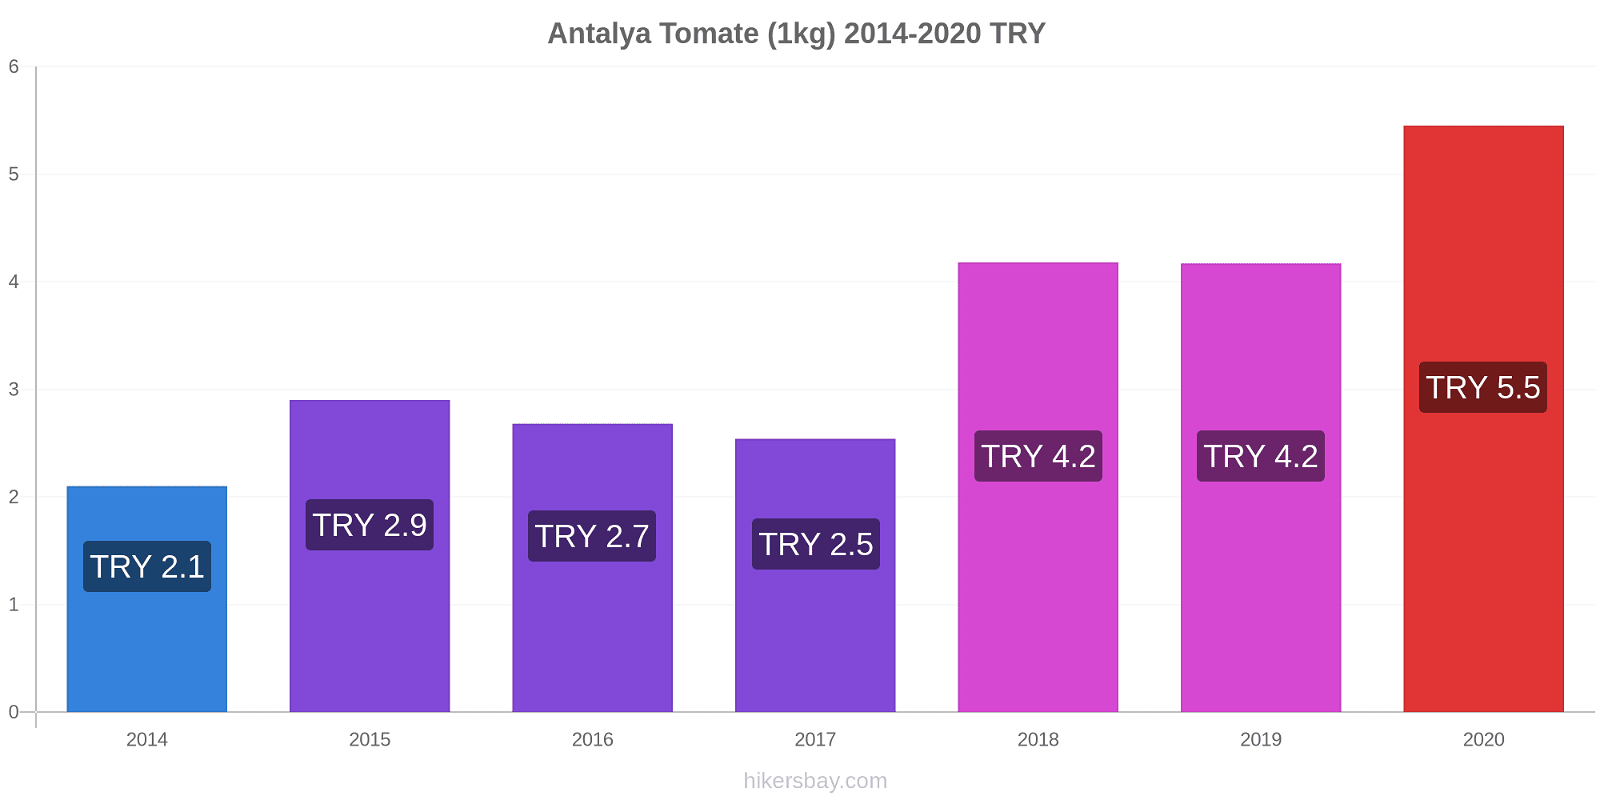 Antalya changements de prix Tomate (1kg) hikersbay.com